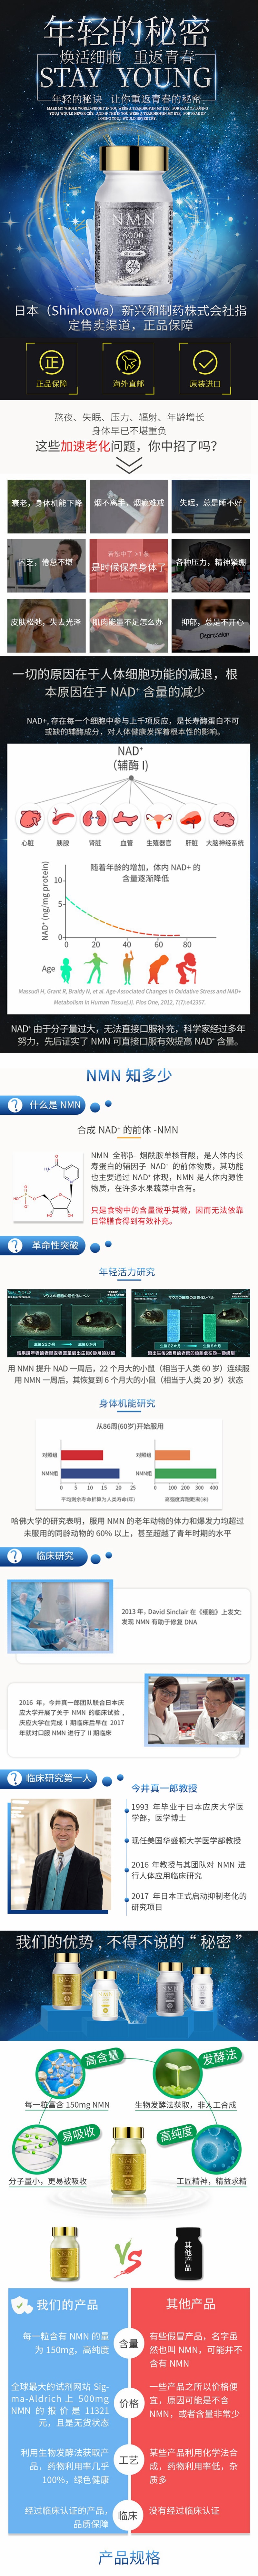 【日本直邮】新兴和制药 MIRAI LAB NMN3000 高纯度抗衰老 逆龄丸